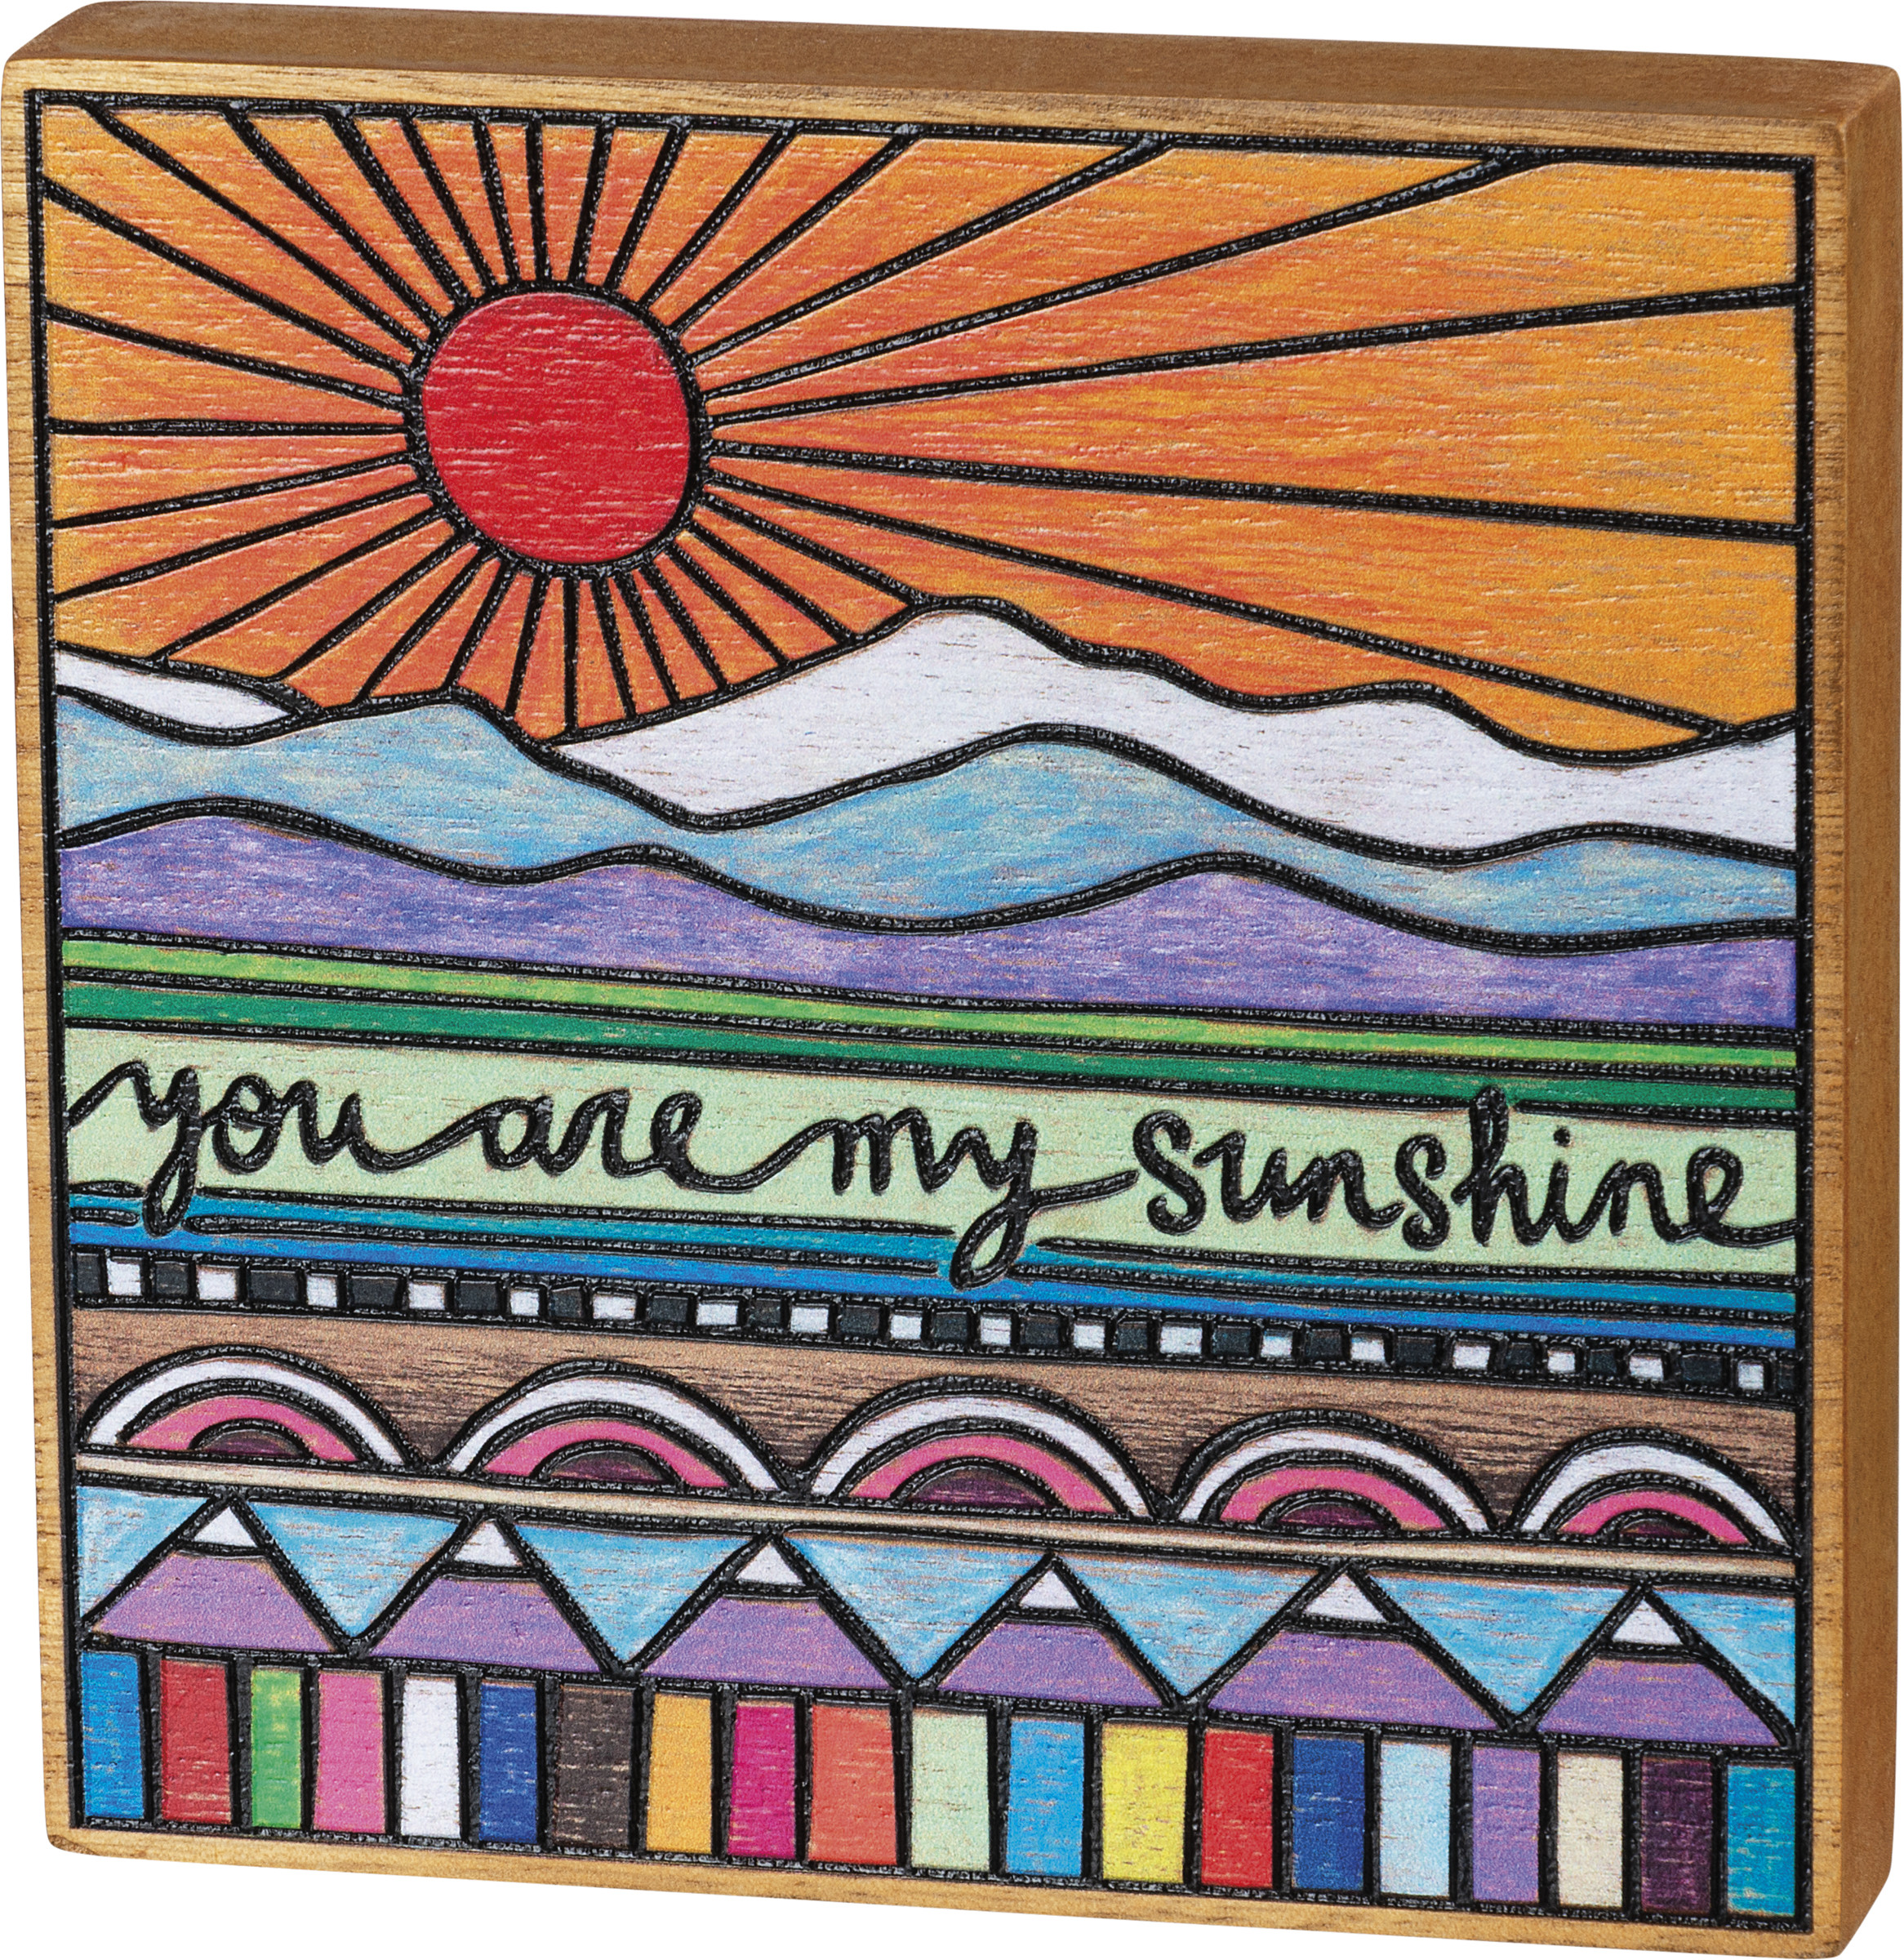 You are my Sunshine — Shop — Kalamazoo Book Arts Center